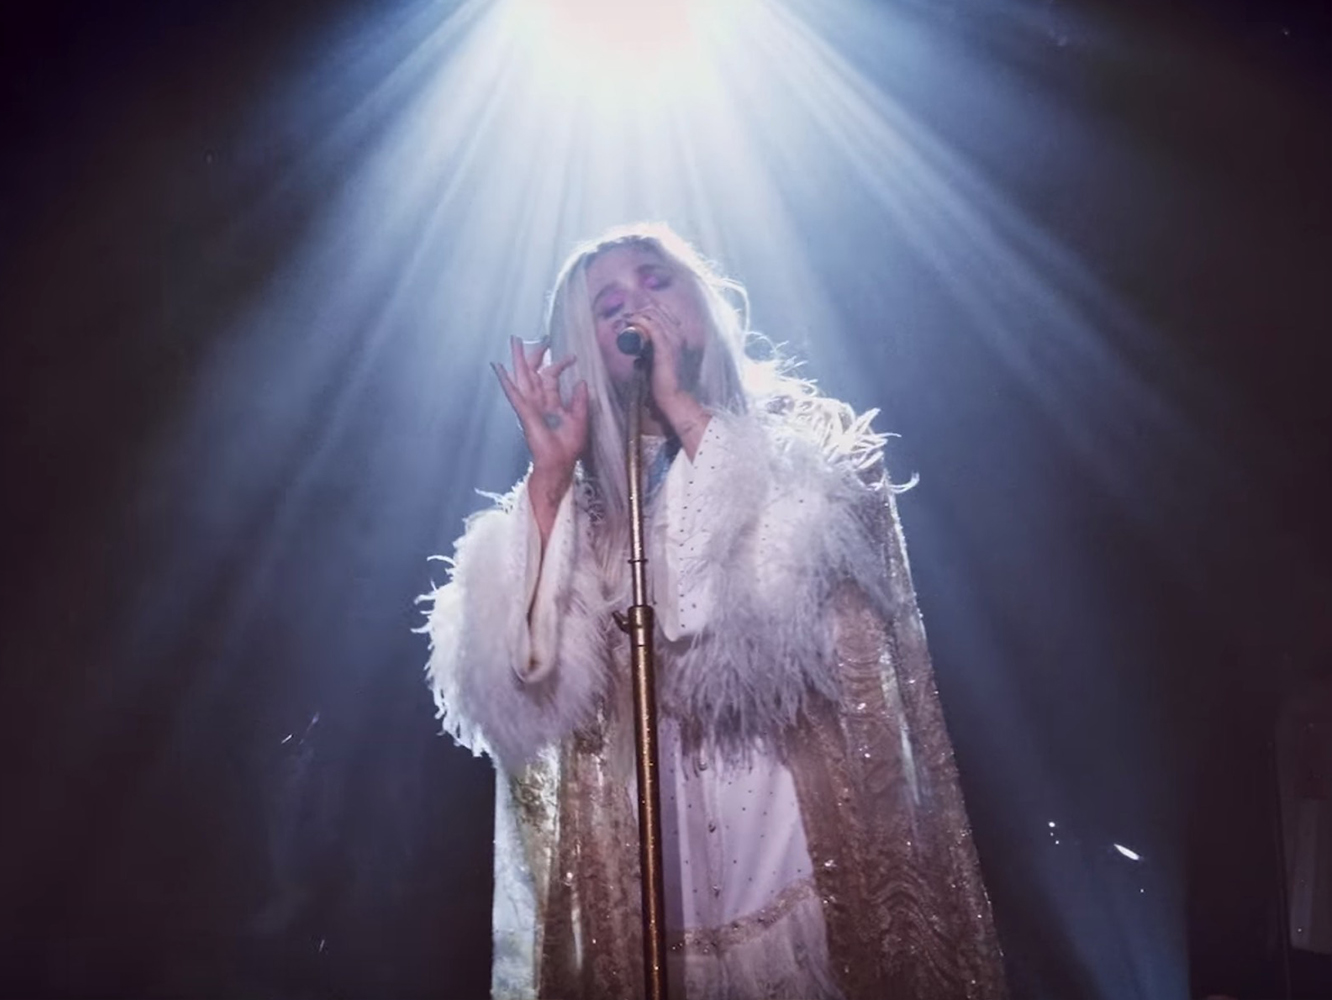  Kesha pospone su gira, cuelga un directo de ‘Praying’, y confirma que la nota alta es el cariño de toda esta gente